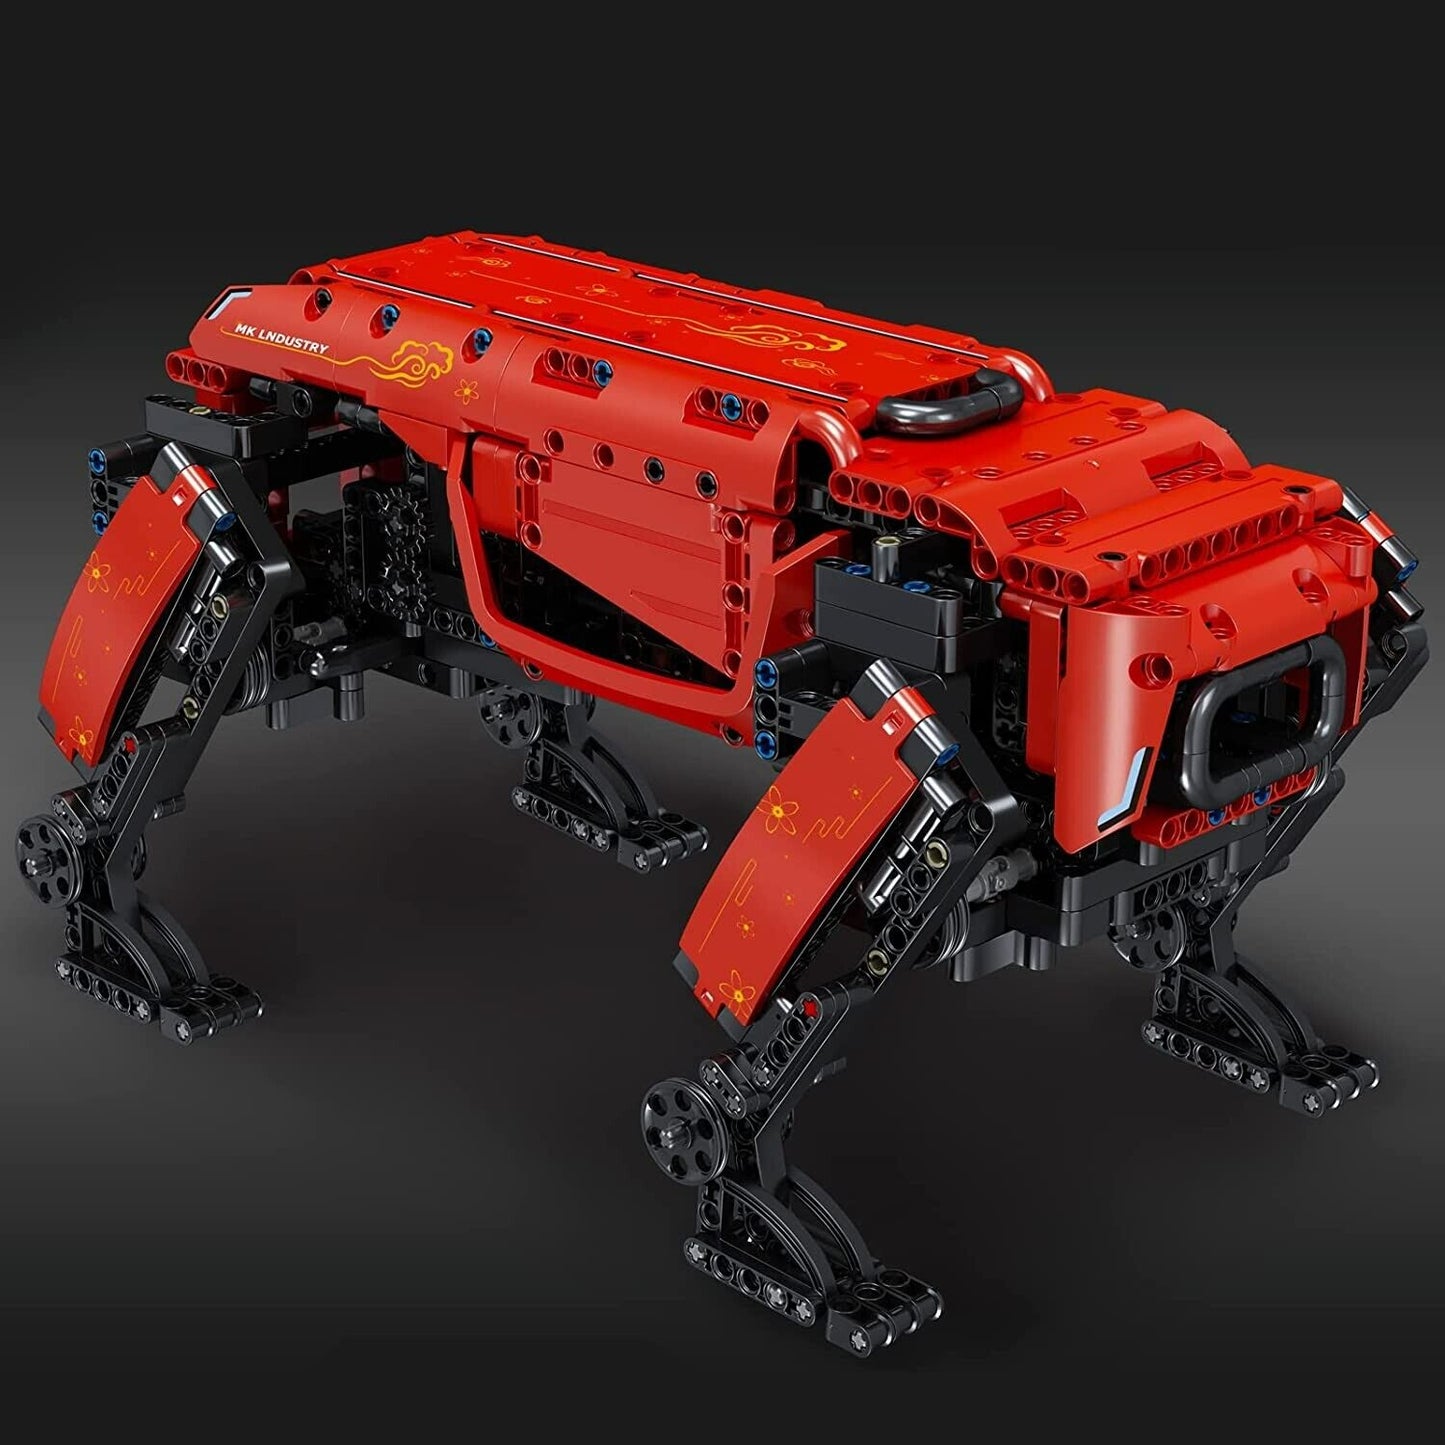 Mould King roter Roboter - Hund 15067 Klemmbaustein Set